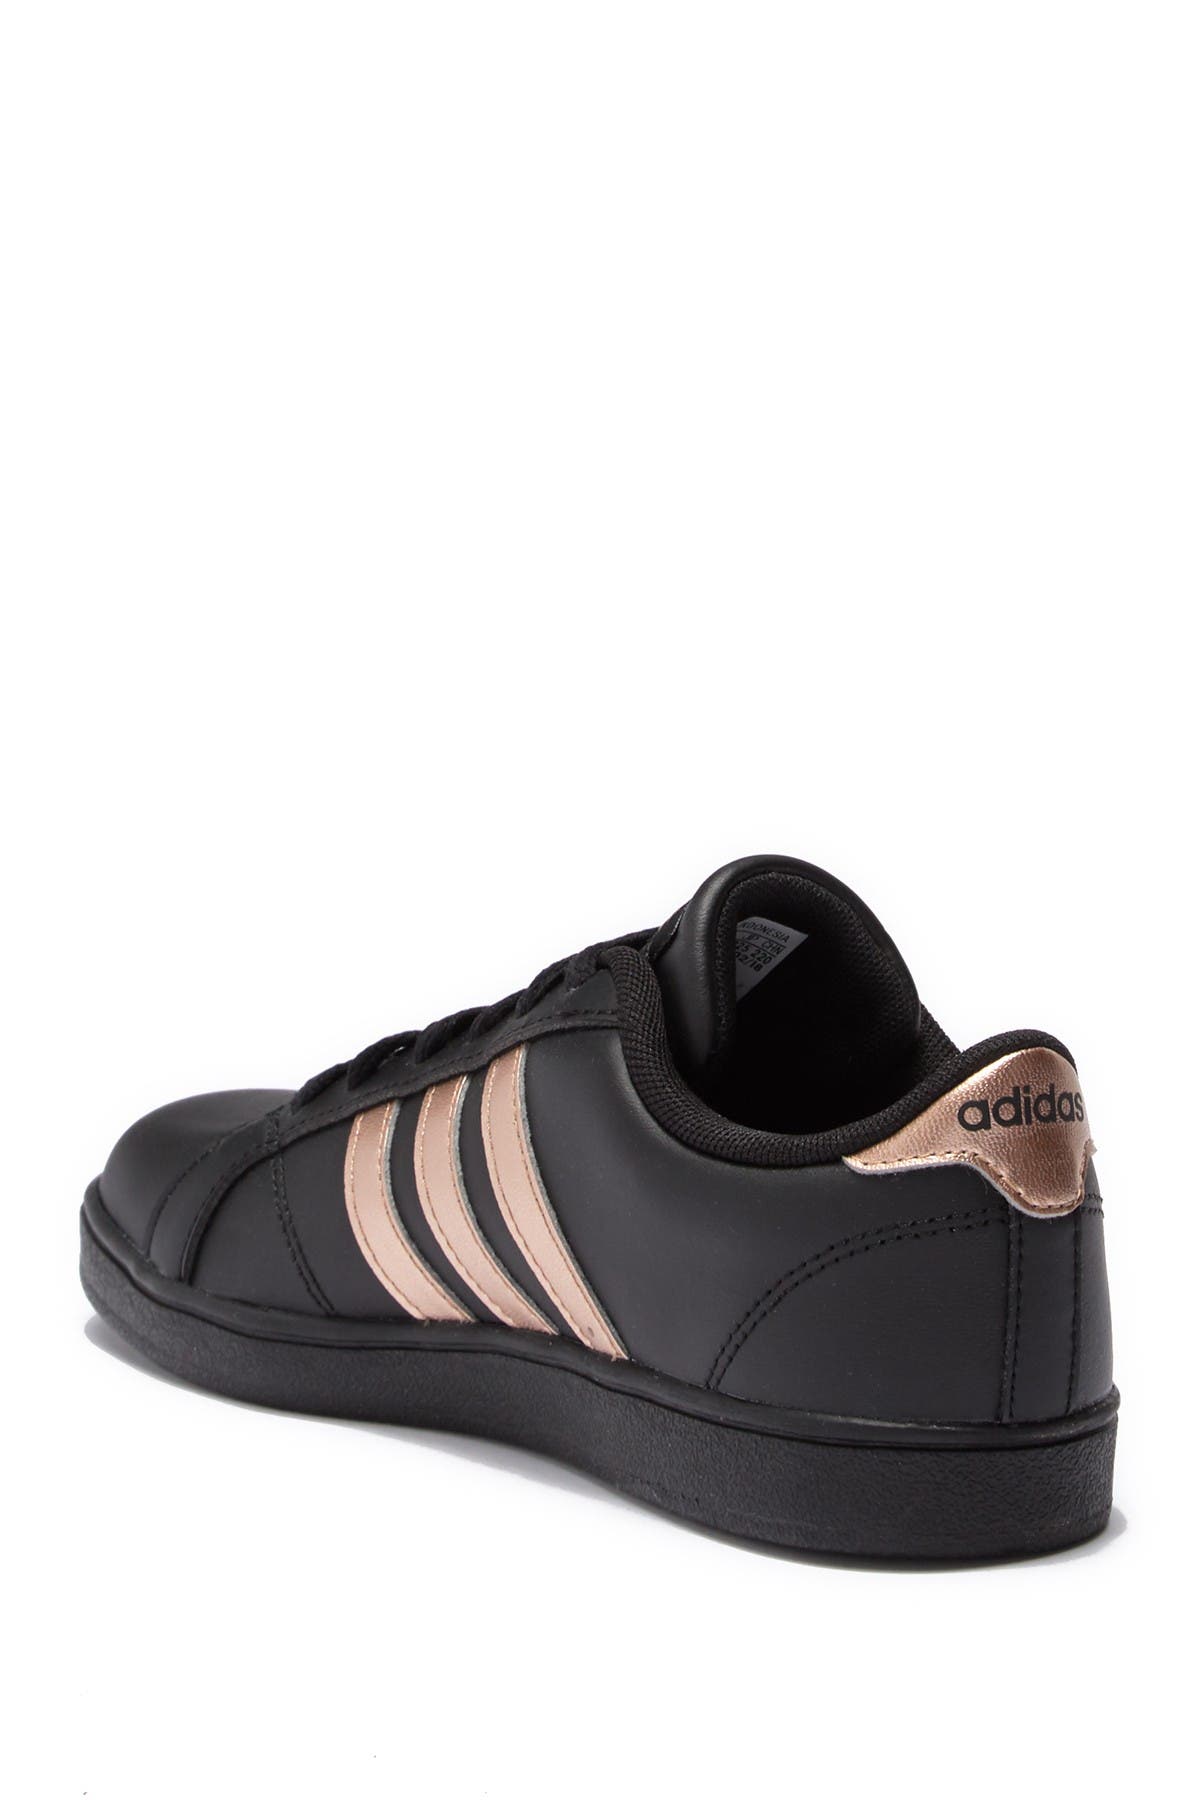 adidas | Baseline K Leather Sneaker 